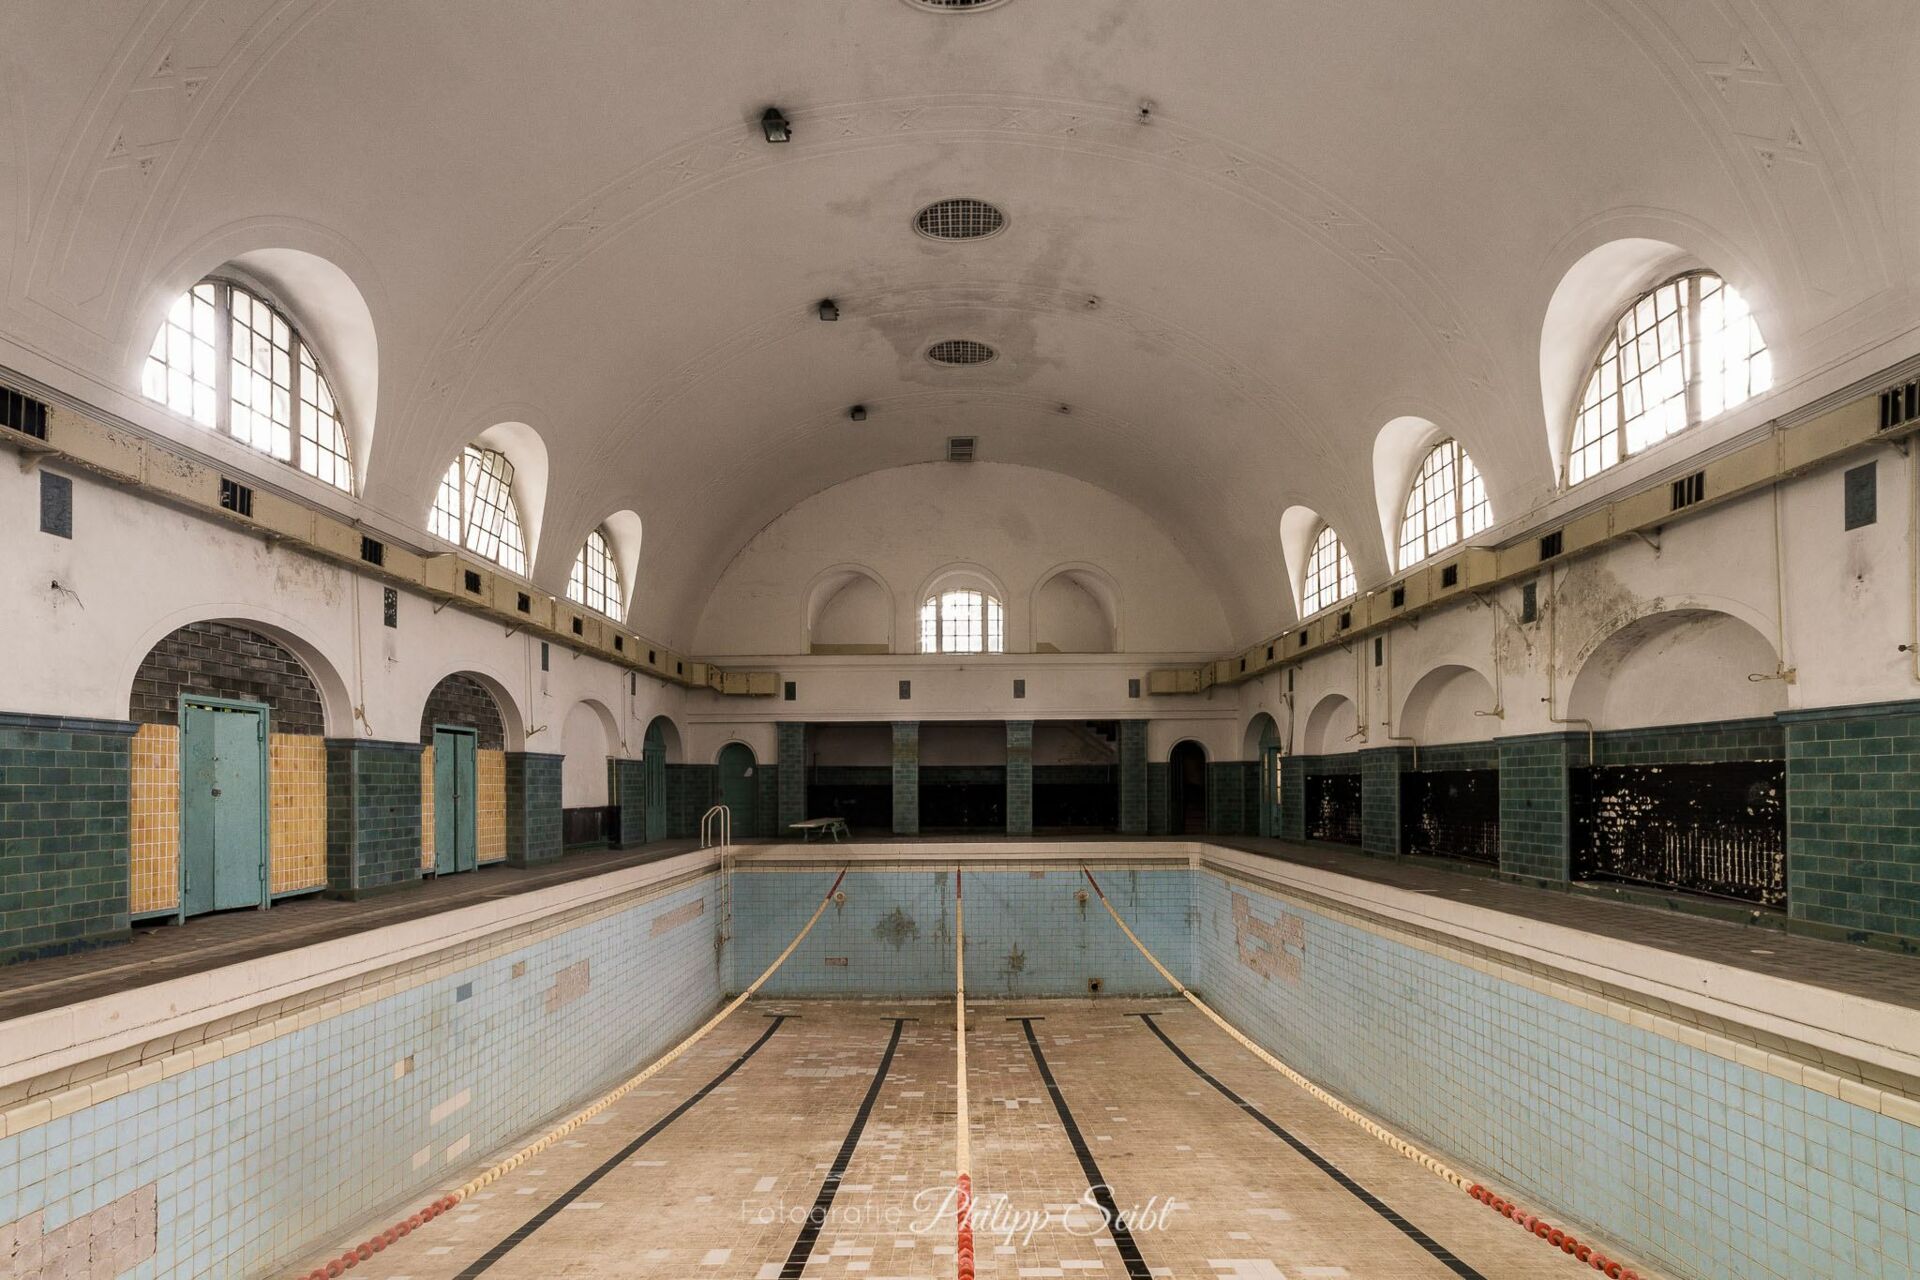 Verlassener Miltärstützpunkt der Sowjetunion Wünsdorf, Schwimmbad